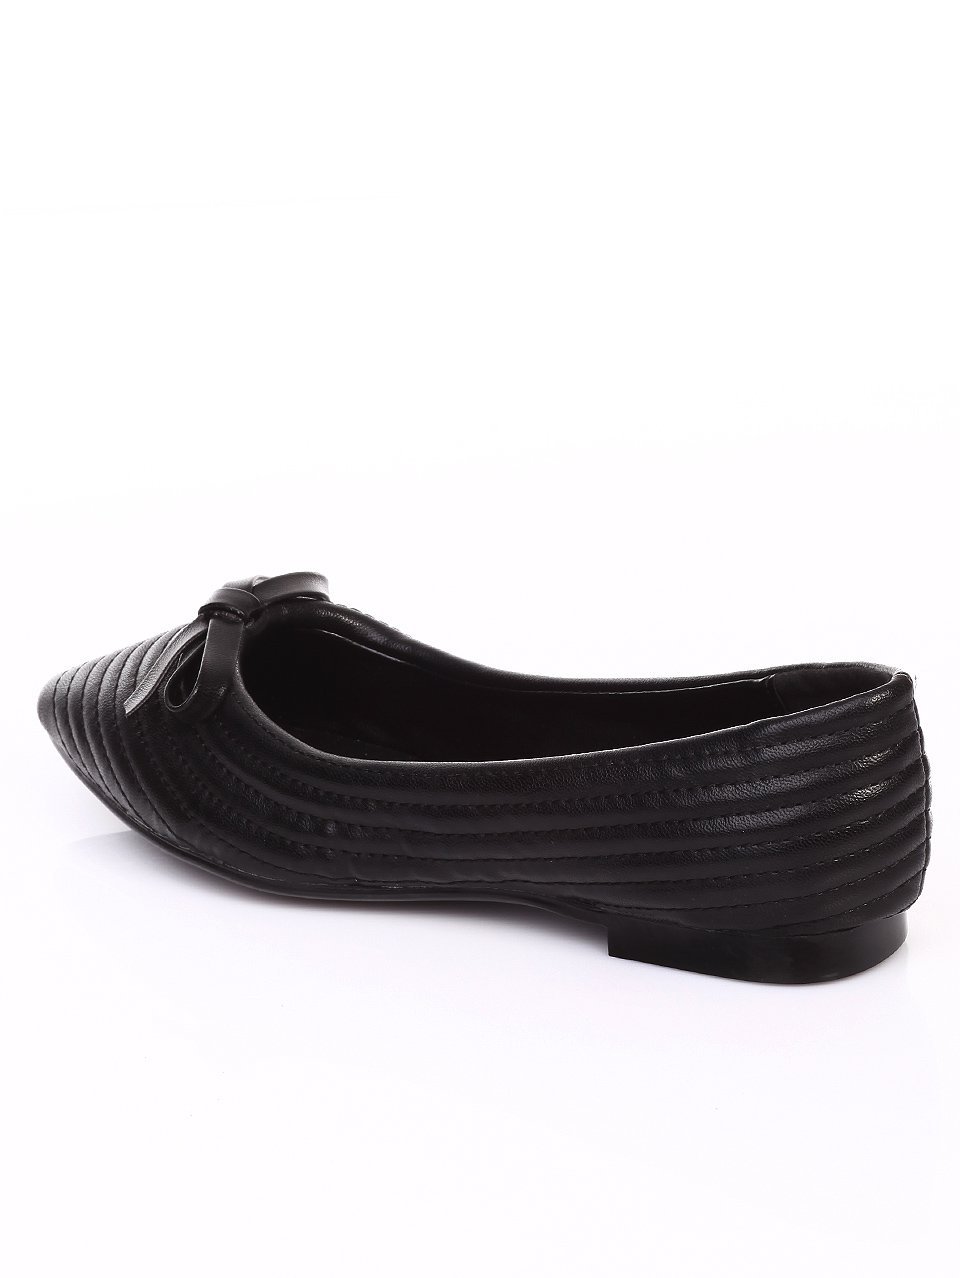 Ежедневни дамски обувки в черно 3B-17248 black